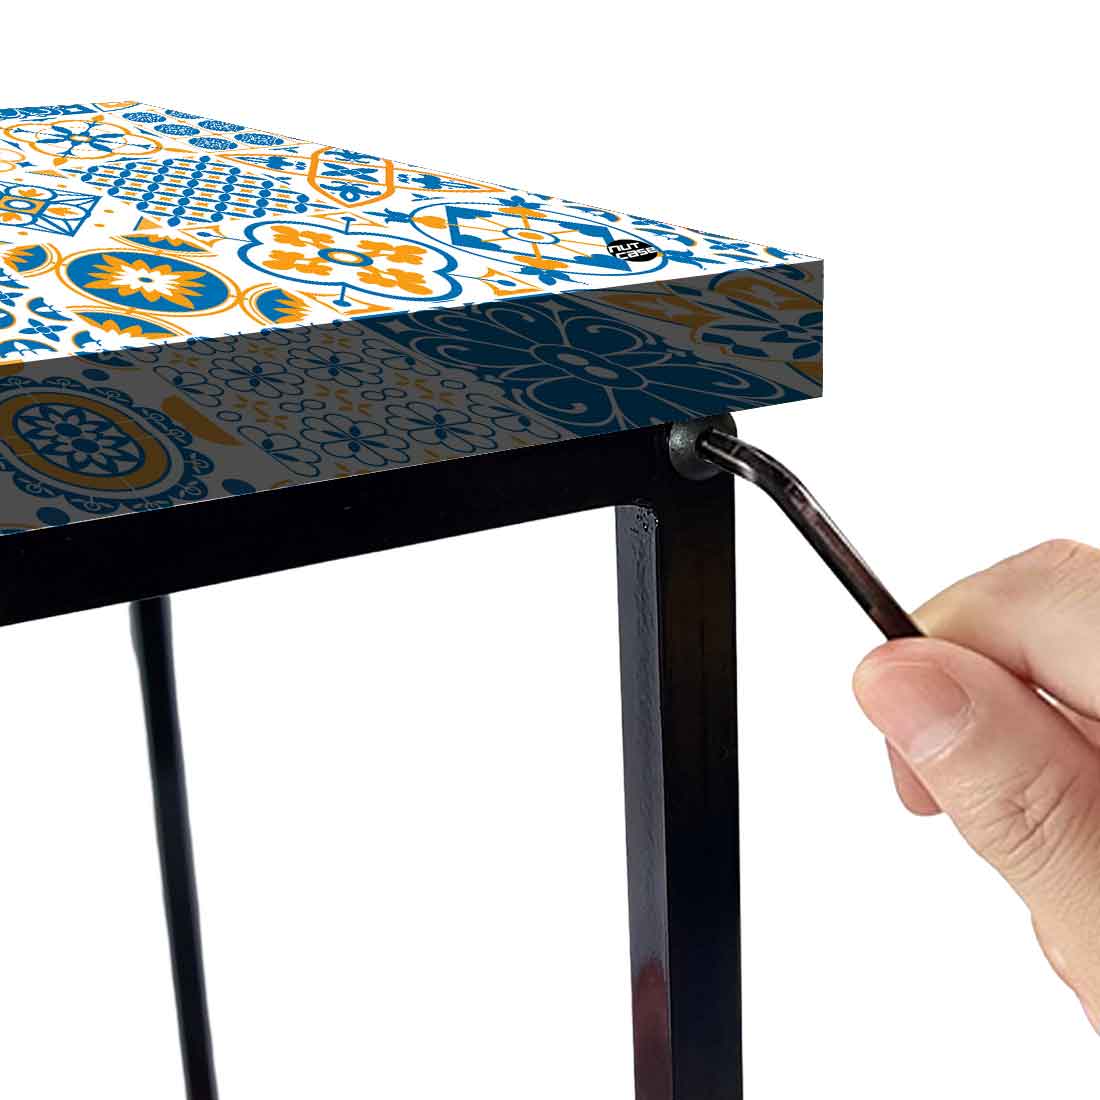 Designer Bedside Table for End Tables for Bedroom - Traditional Spanish Tiles Nutcase